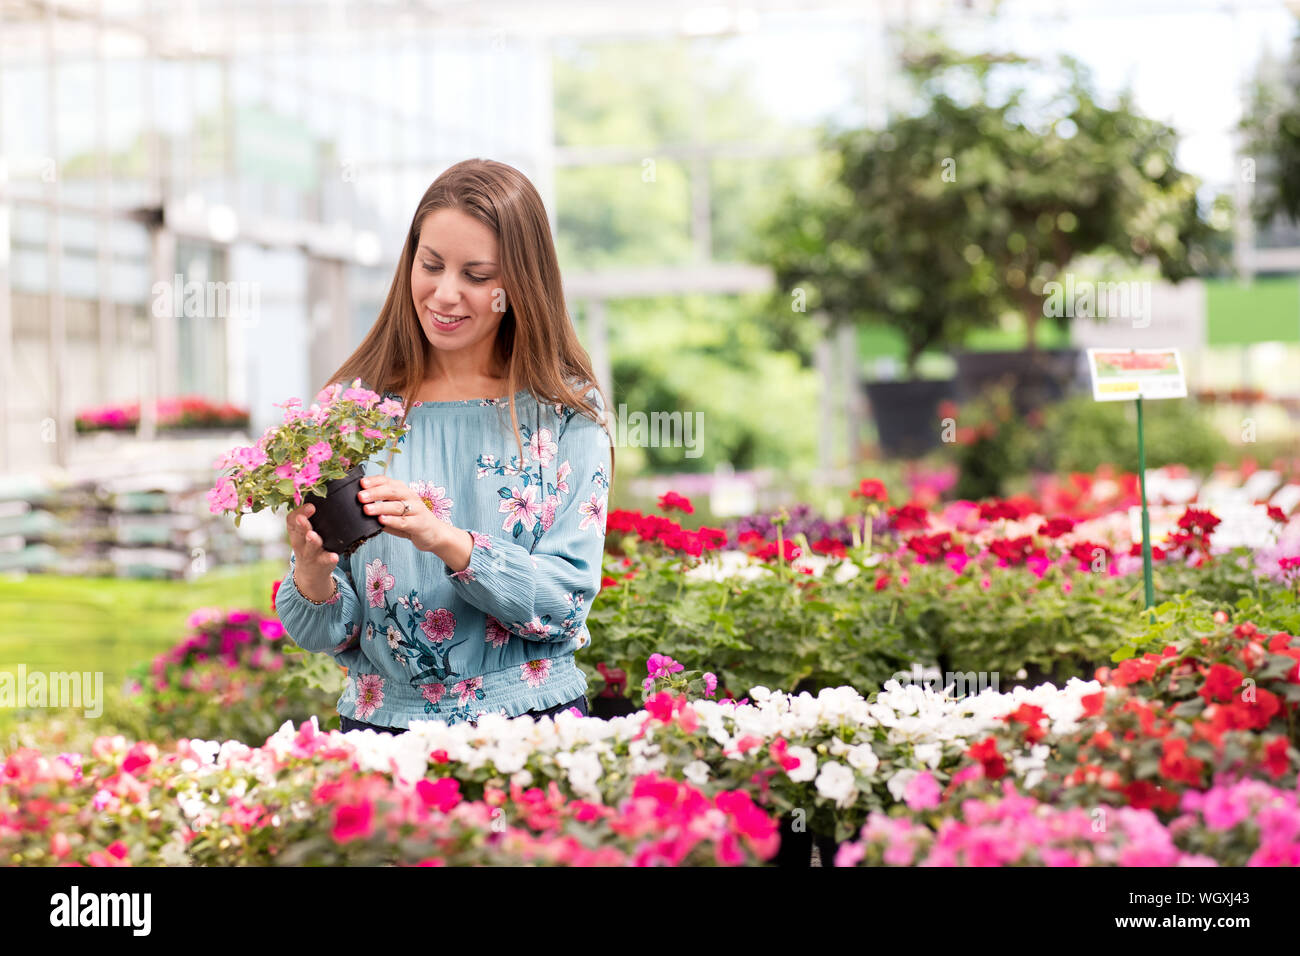 Ziemlich lächelnden jungen Frau Wahl Topfpflanzen blühende Pflanzen in einer großen Gärtnerei Holding einen Topf mit rosa Blumen in der Hand zu kaufen Stockfoto